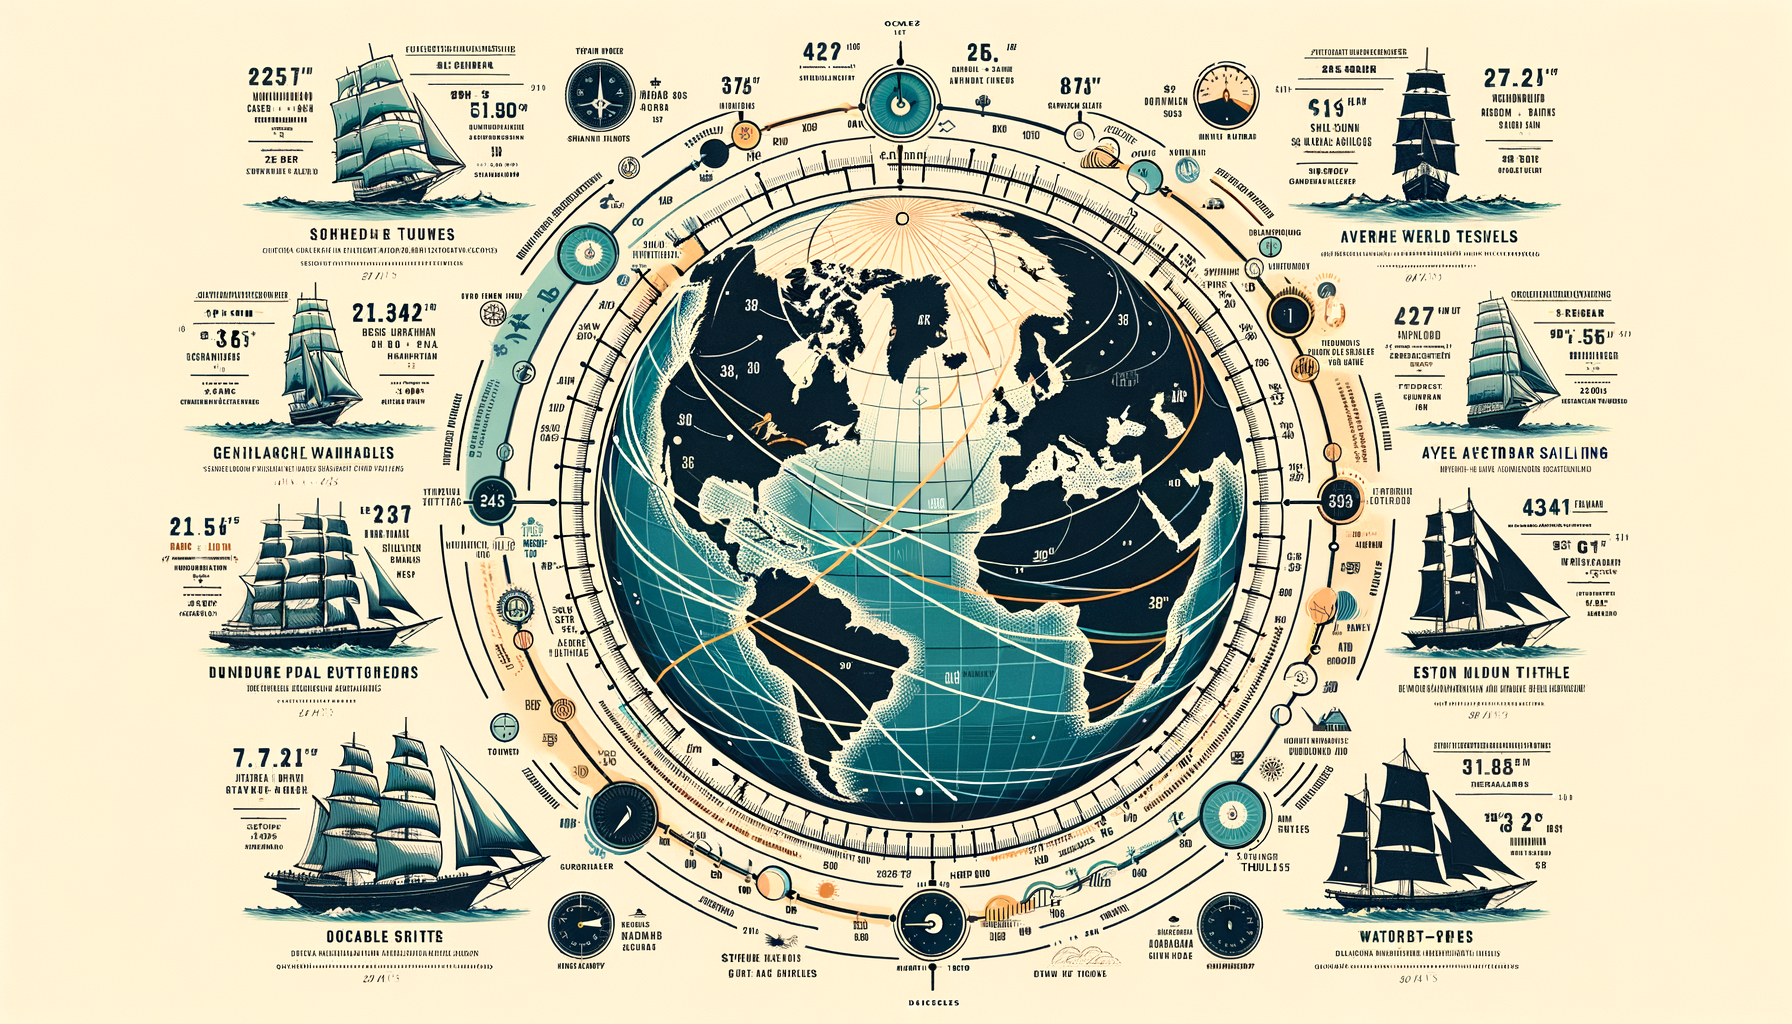 découvrez enfin combien de temps il faut réellement pour faire le tour du monde en bateau dans cette fascinante exploration des voyages maritimes et des aventures autour du globe !